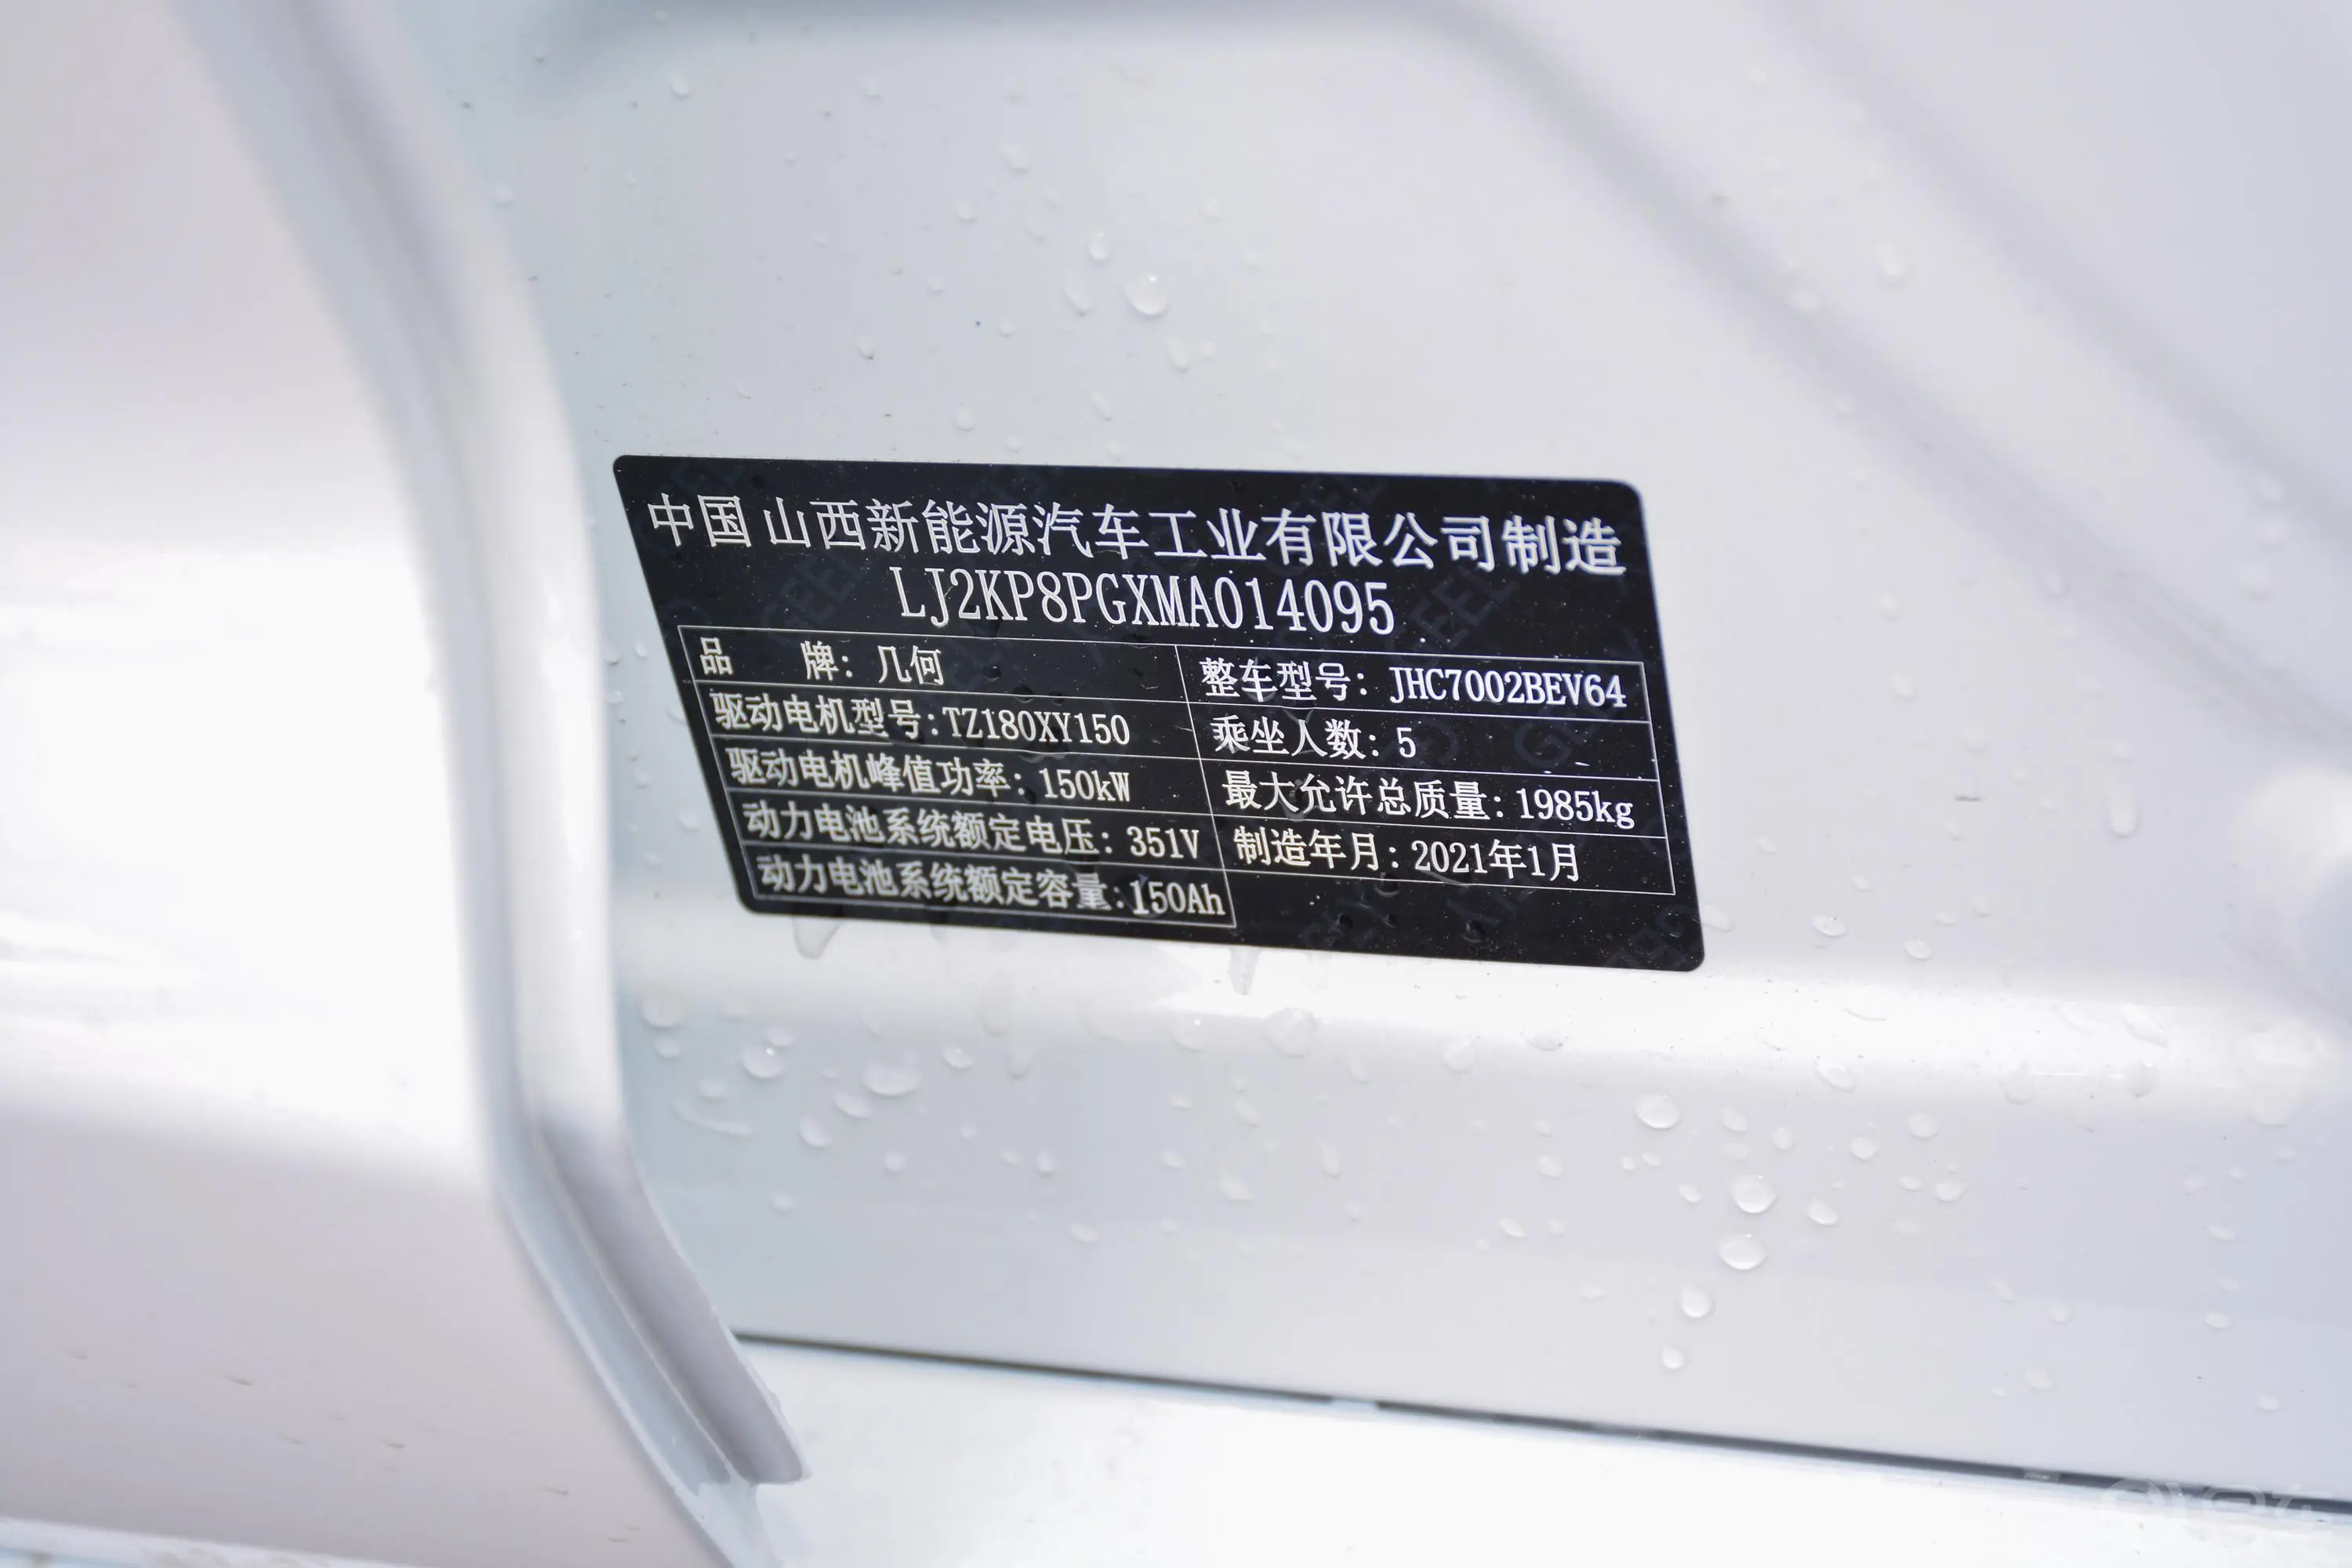 帝豪EVPro 421km 网约版车辆信息铭牌